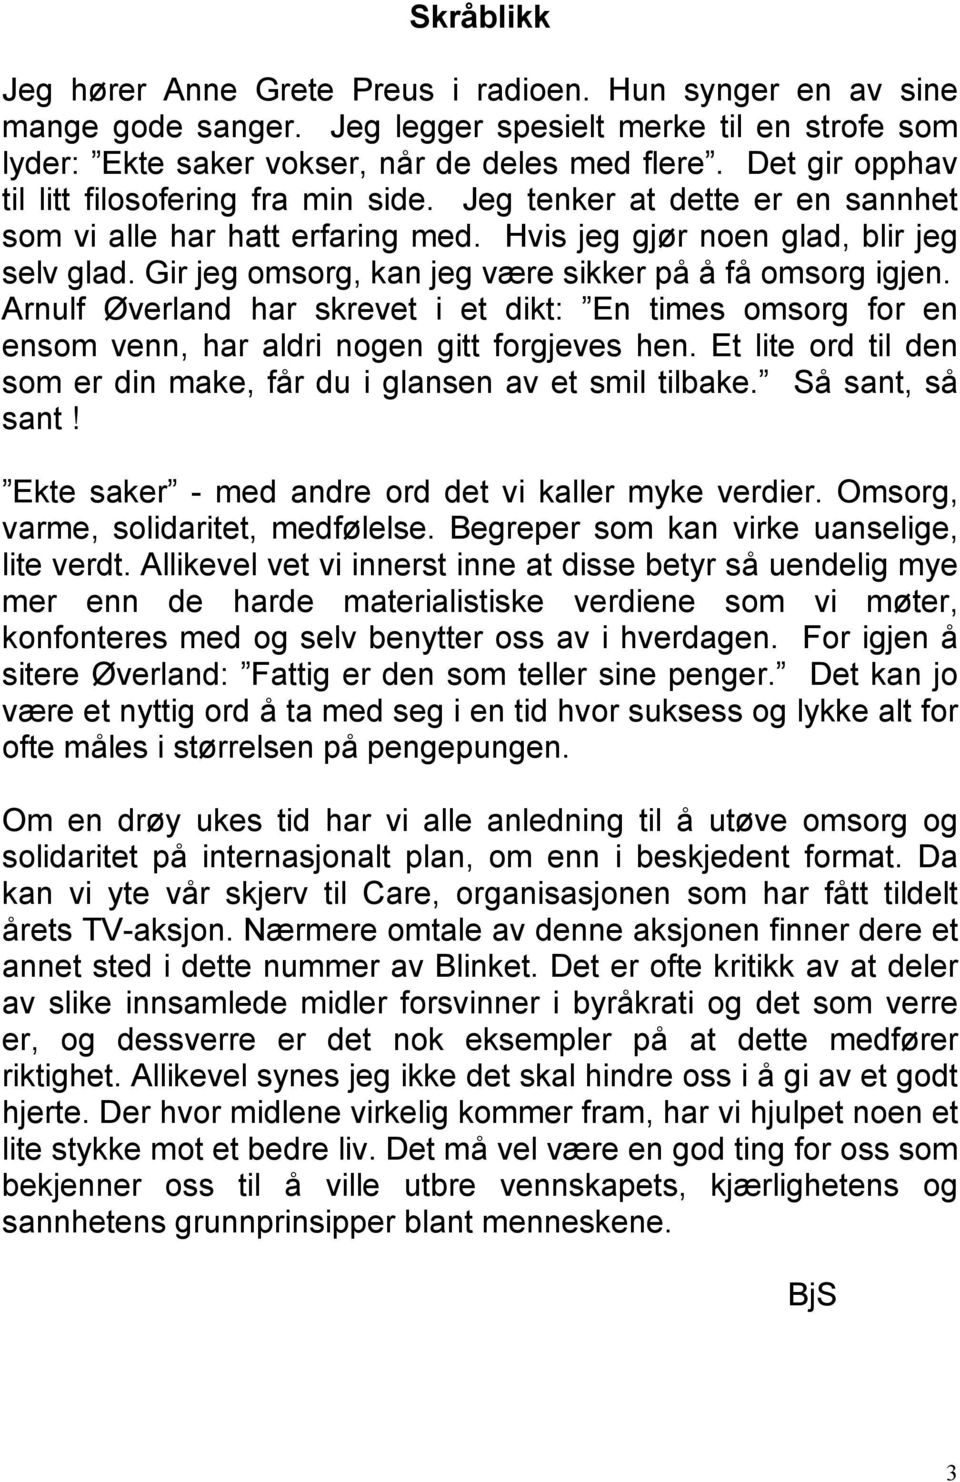 Gir jeg omsorg, kan jeg være sikker på å få omsorg igjen. Arnulf Øverland har skrevet i et dikt: En times omsorg for en ensom venn, har aldri nogen gitt forgjeves hen.